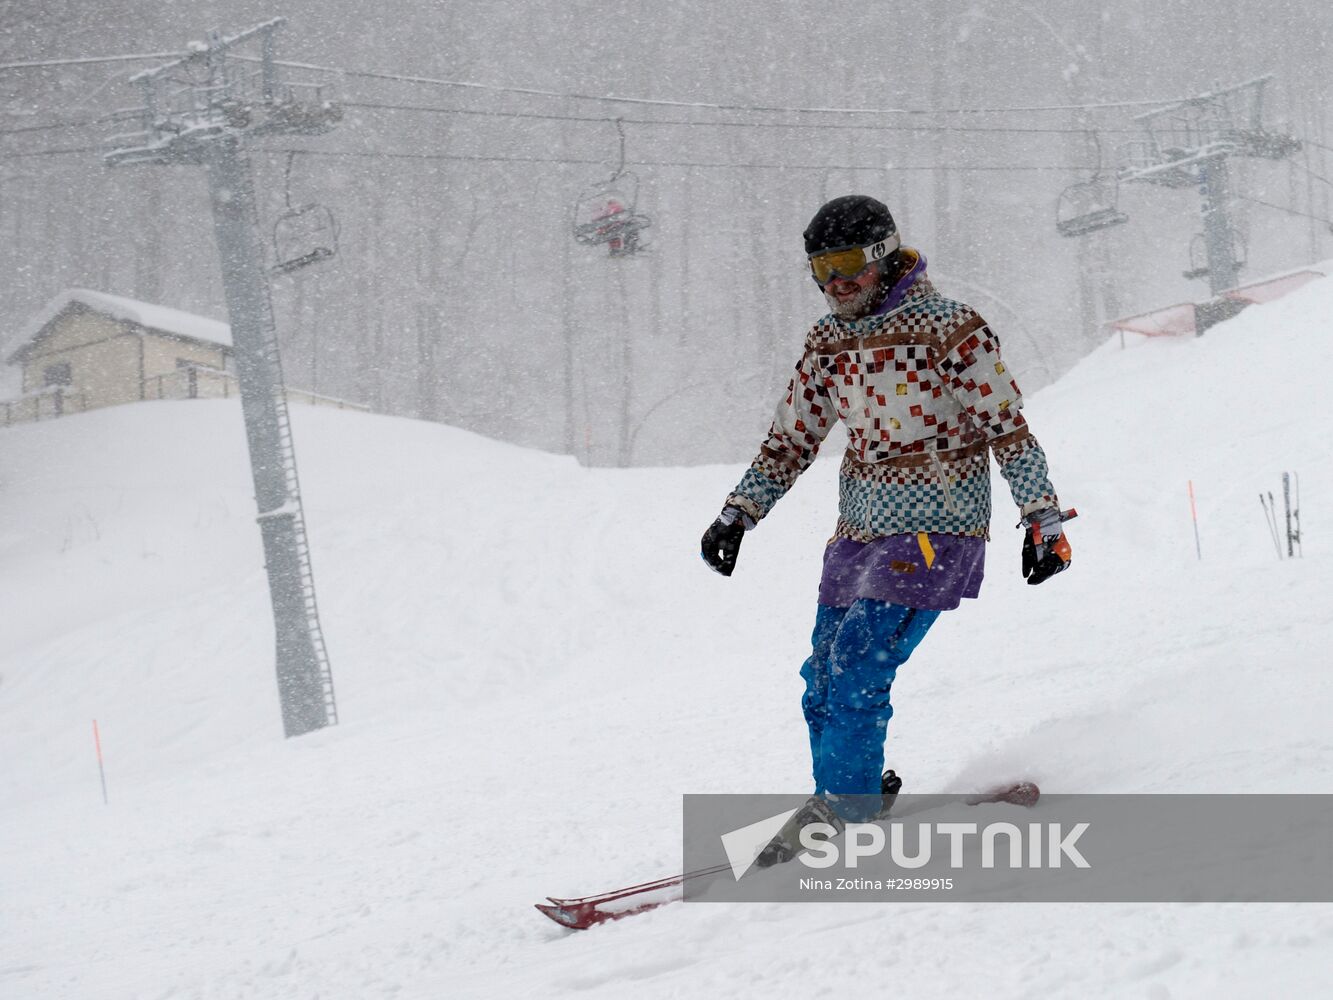 Ski season begins at Gorky Gorod ski resort in Sochi